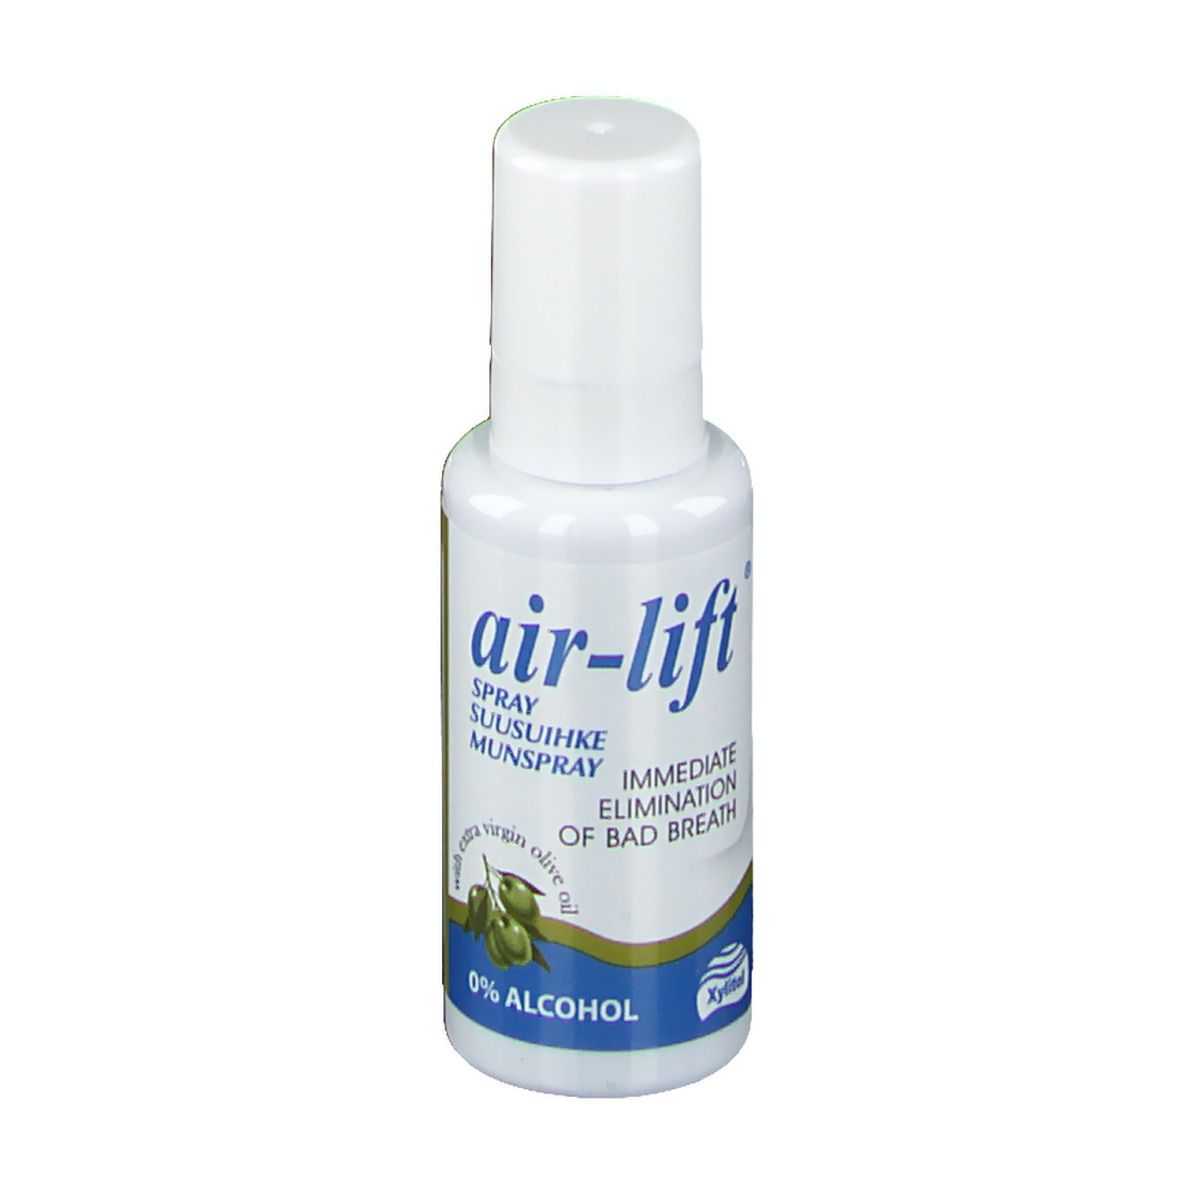 air-lift® Spray